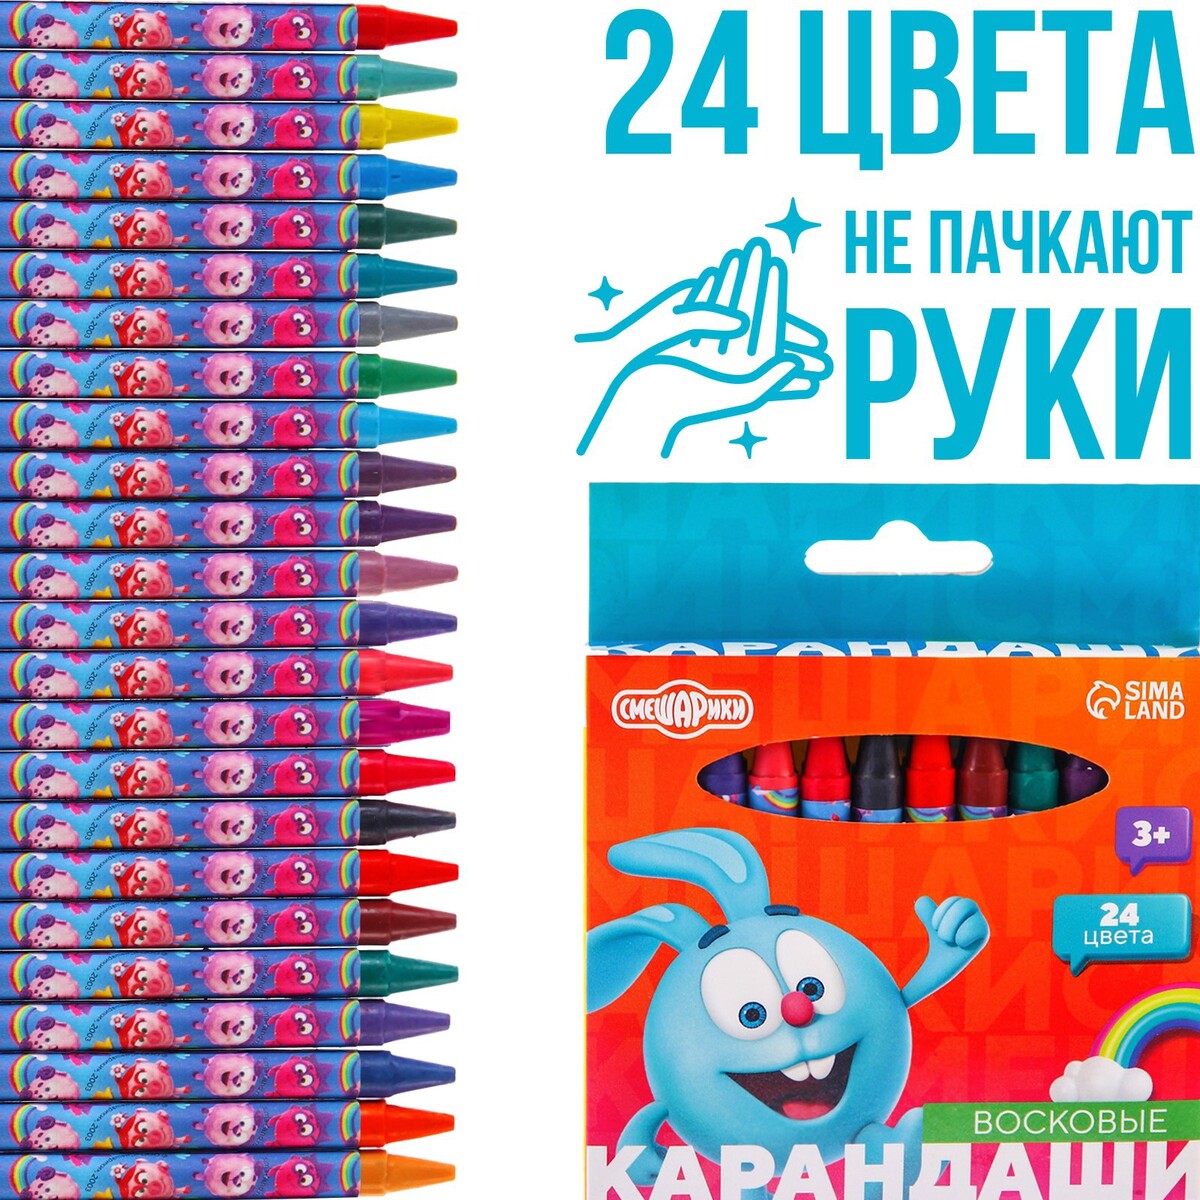 Восковые карандаши, набор 24 цвета, смешарики гравюра смешарики бараш и нюша с ной основой набор 2 шт а6